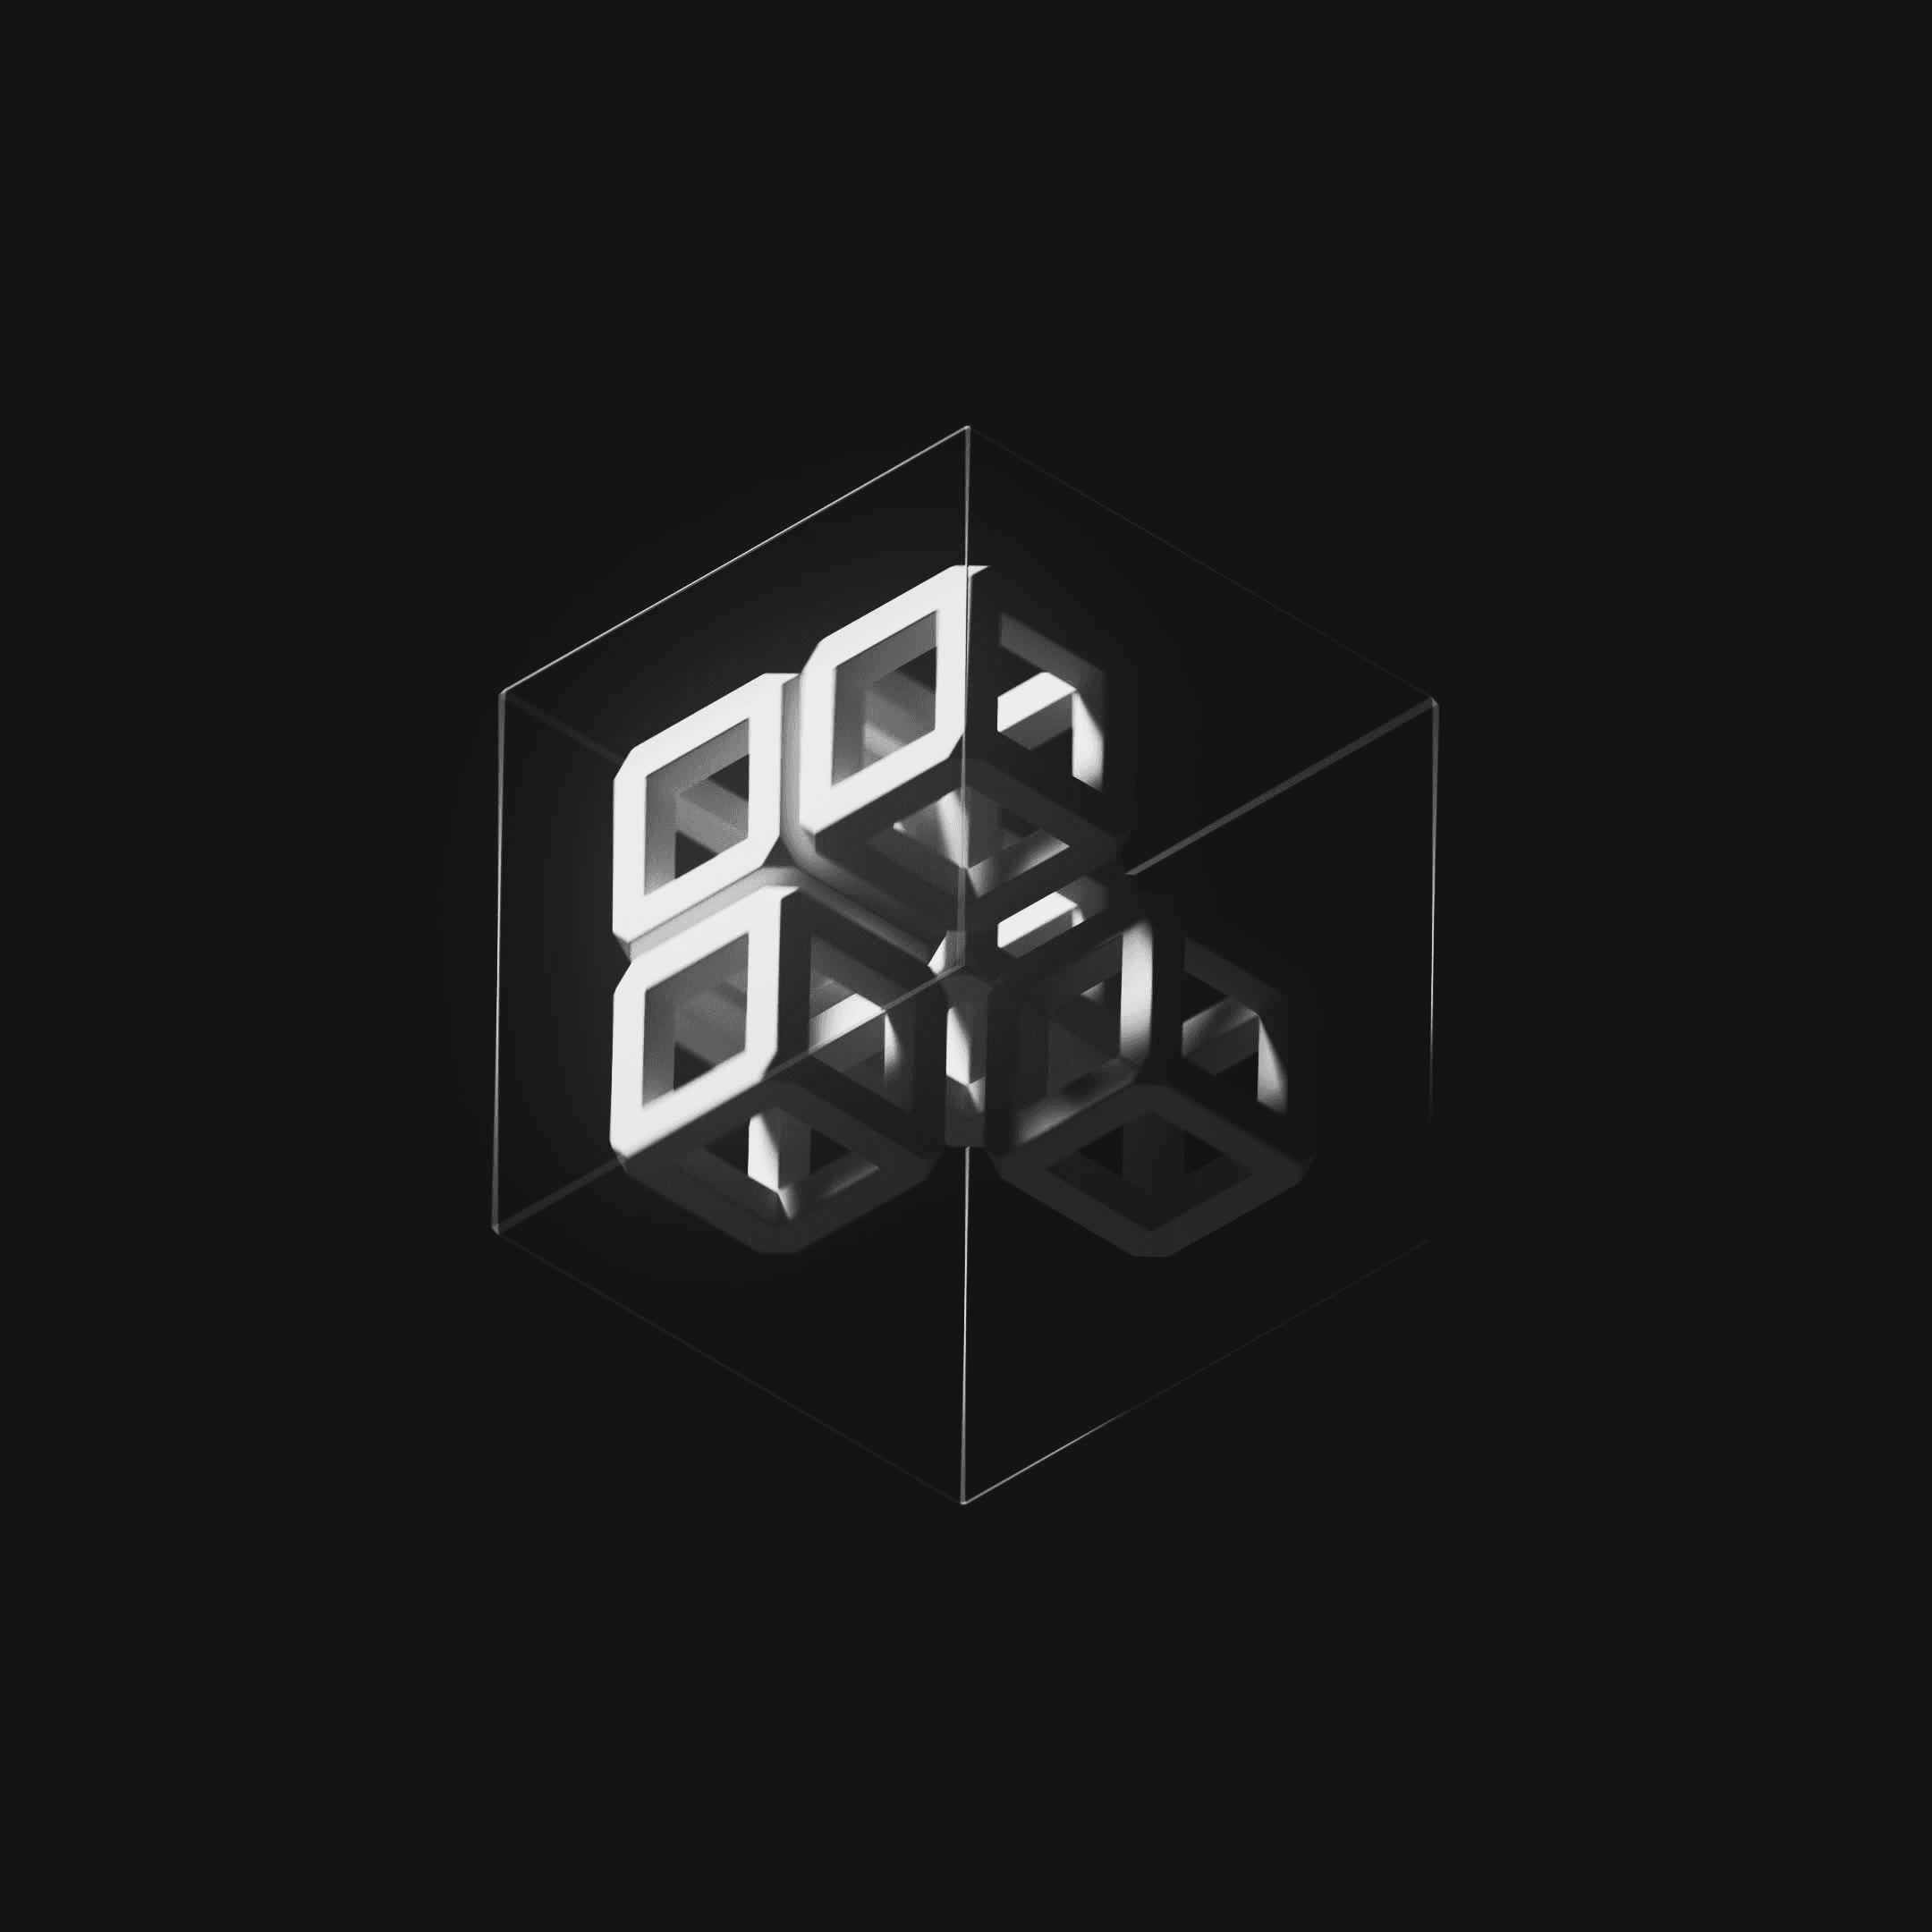 Five Cubes #396/571